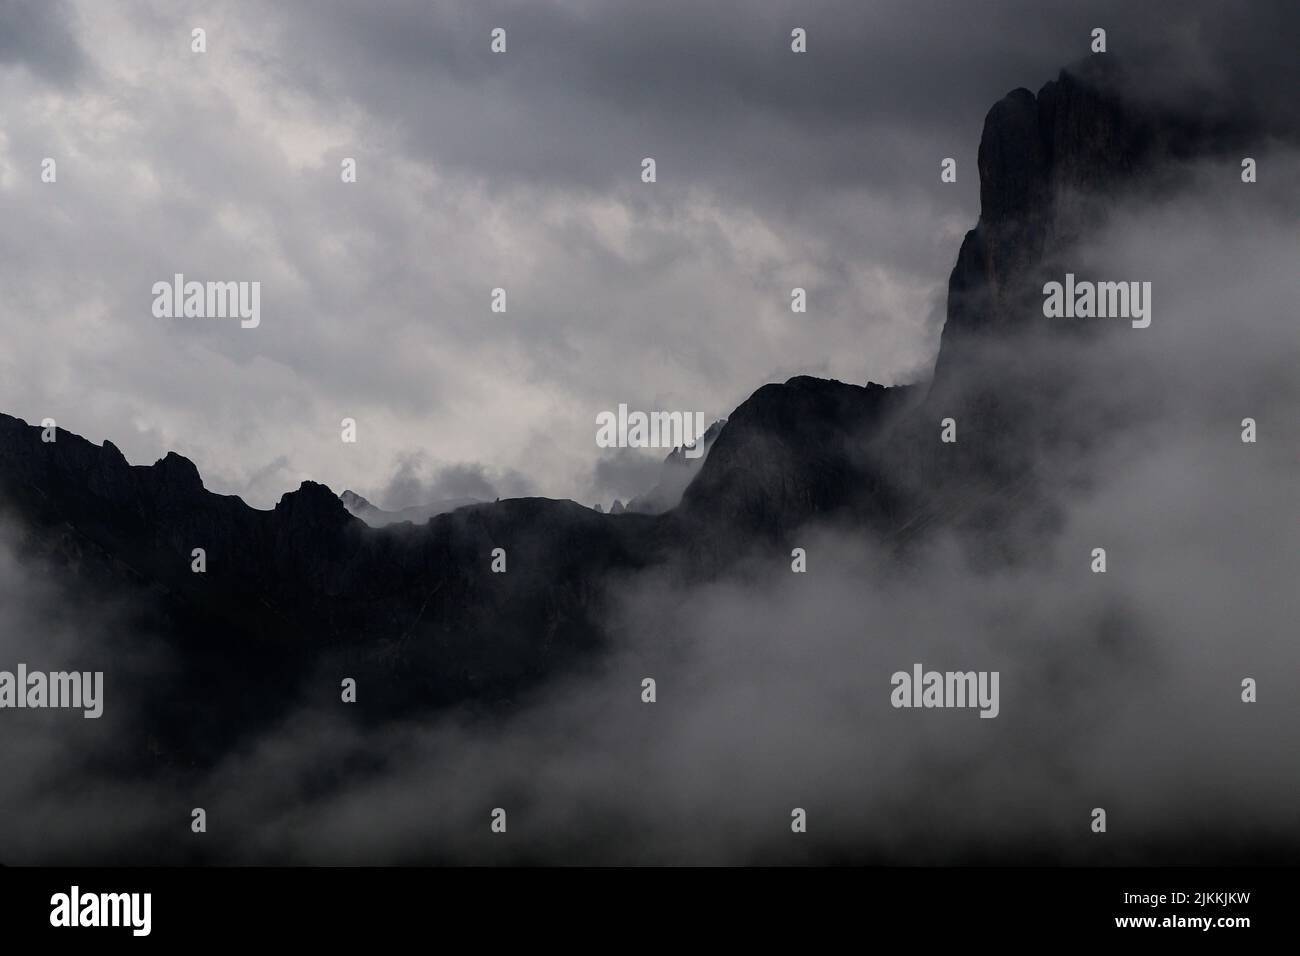 un bellissimo scatto delle montagne coperte dalle nuvole e dal fumo. Foto Stock